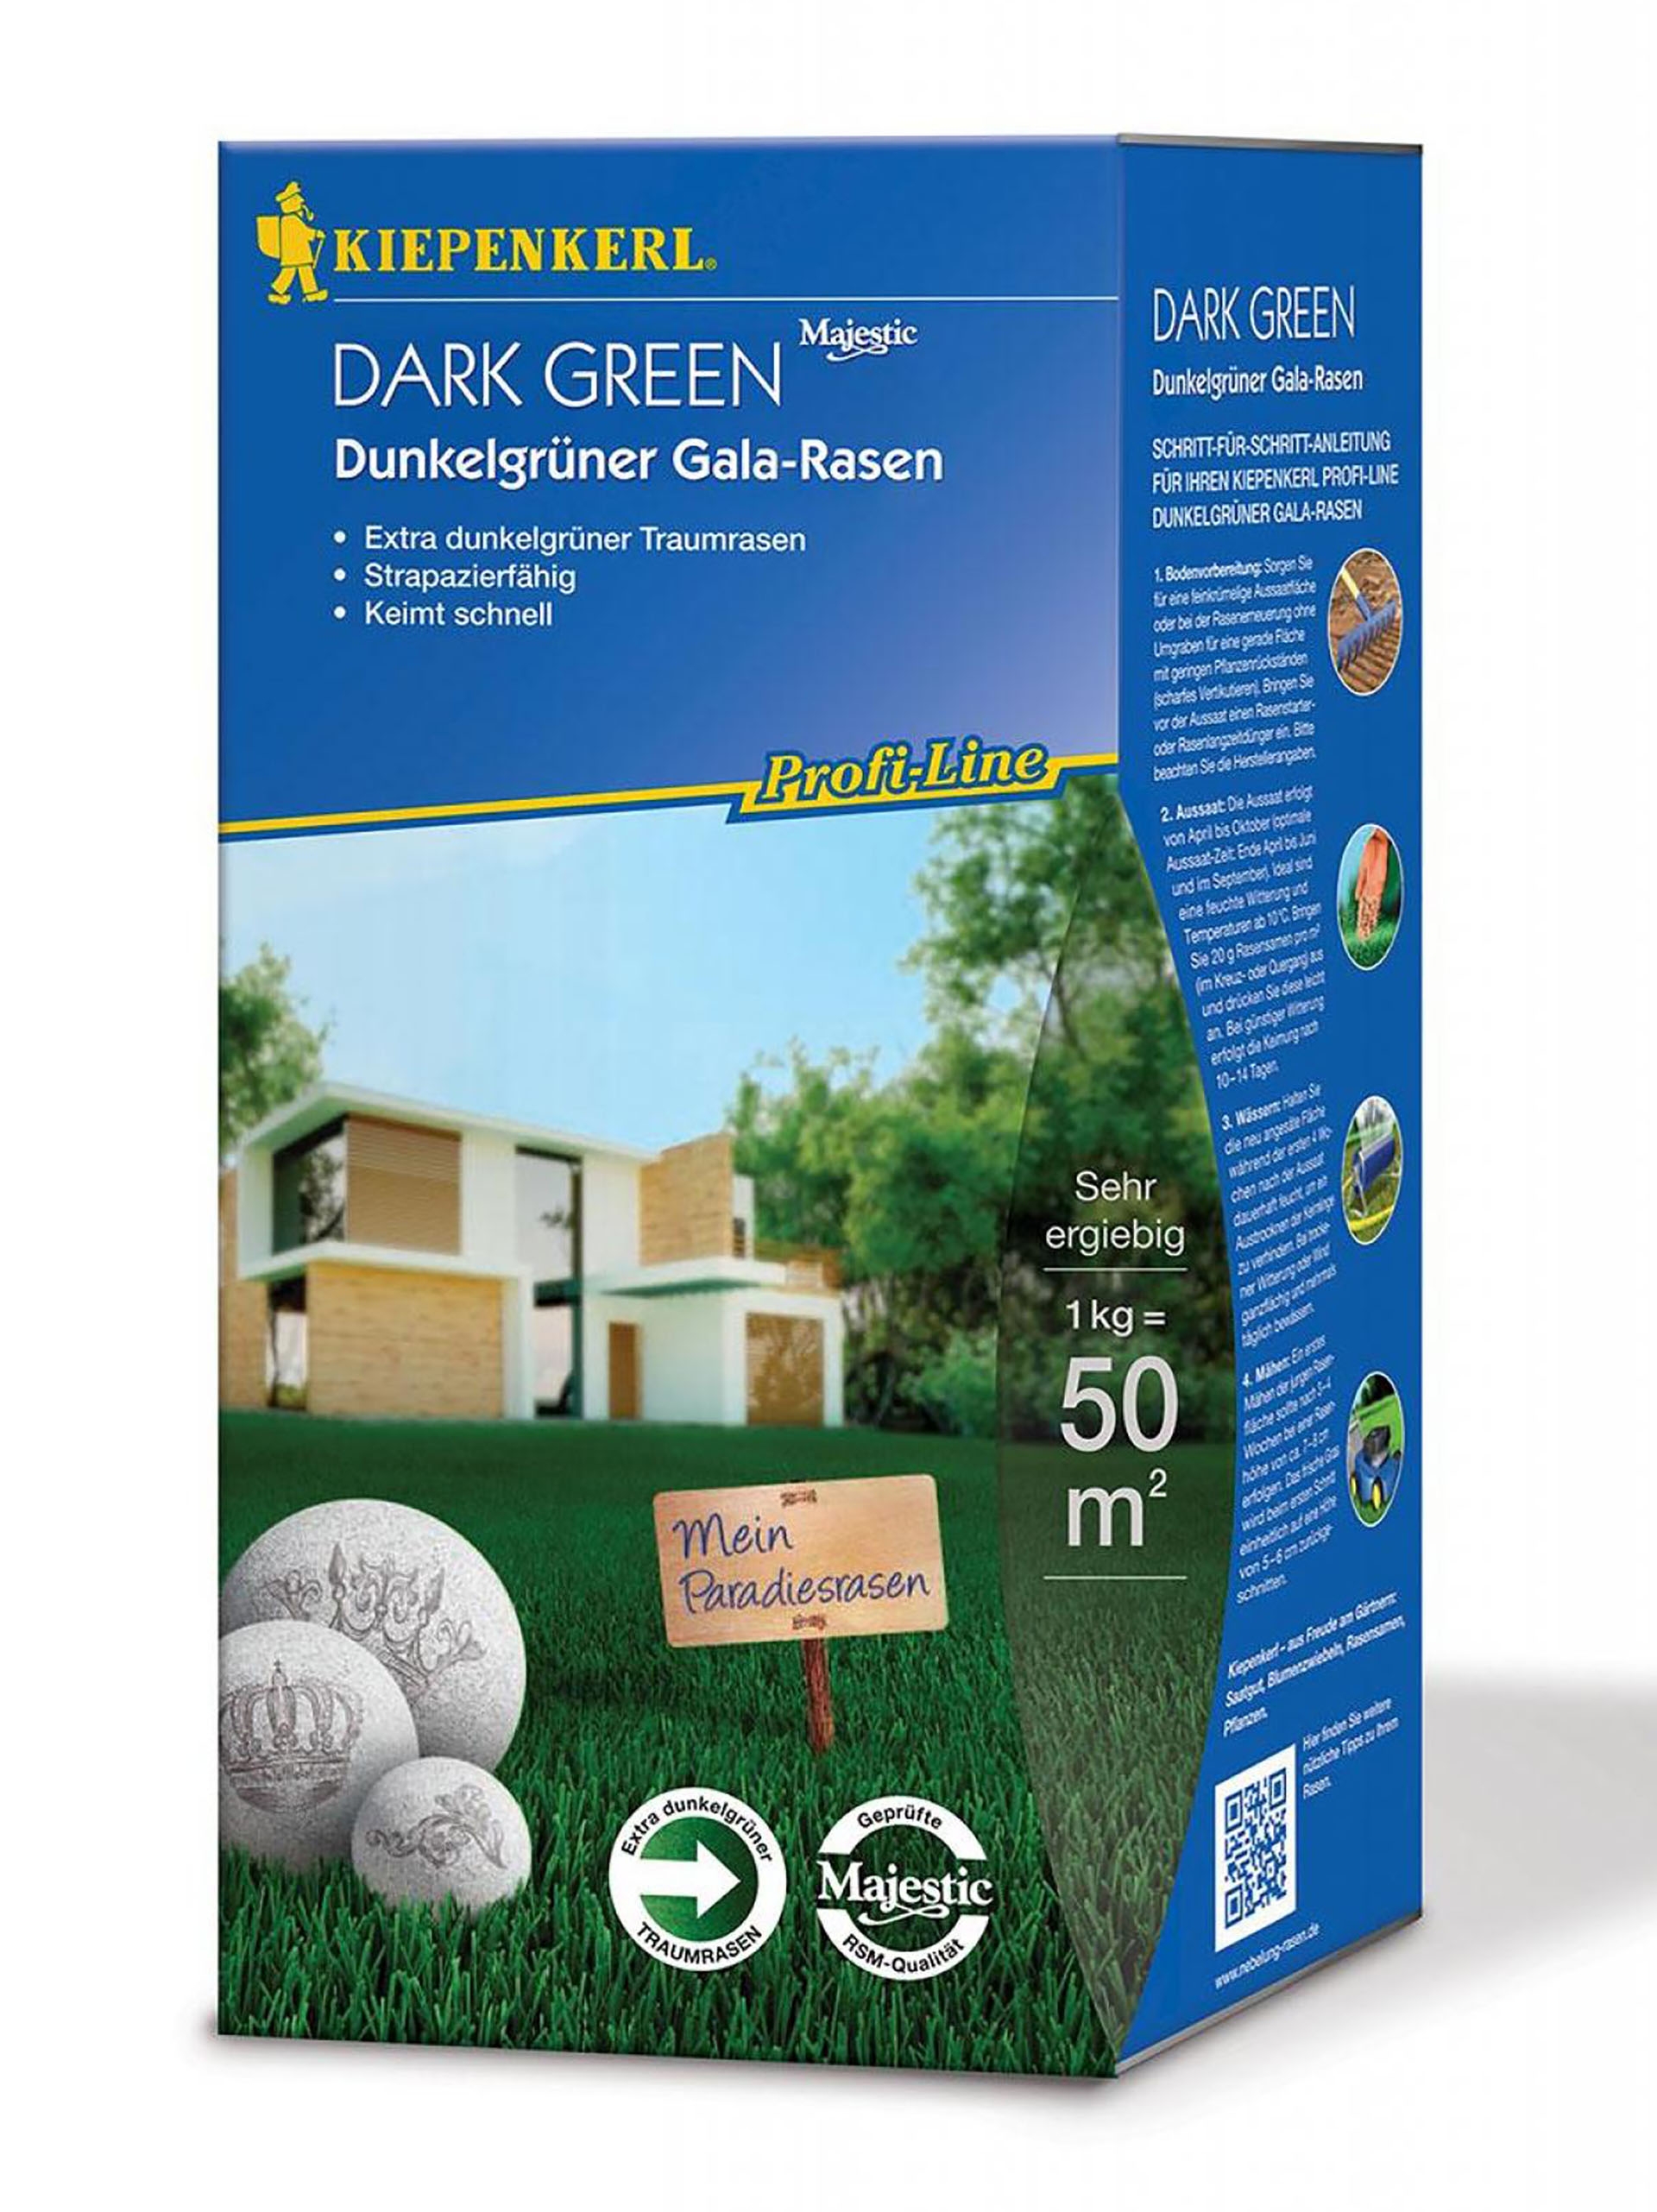 Dunkelgrüner Gala-Rasen Dark Green 1kg